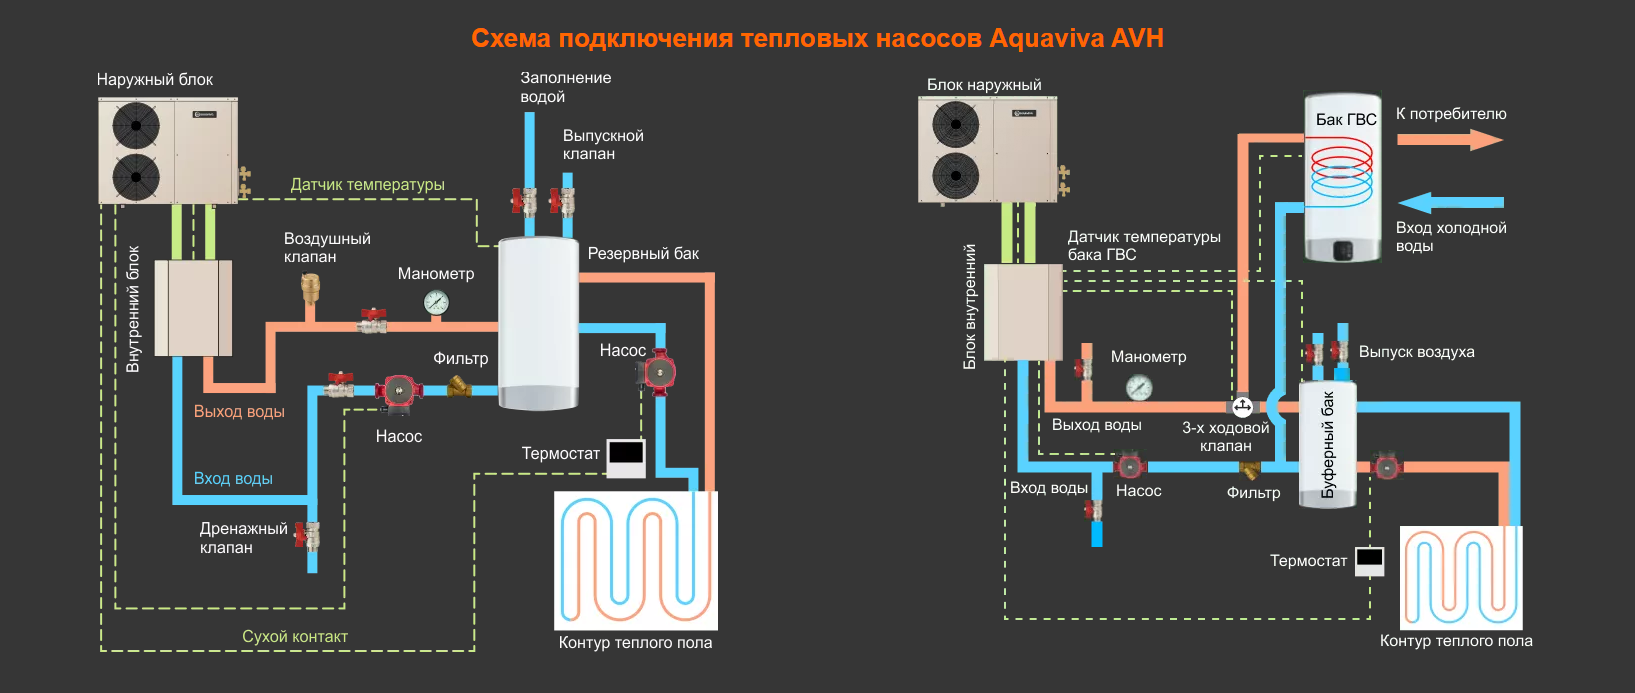 Схема подключения тепловых насосов Aquaviva AVH